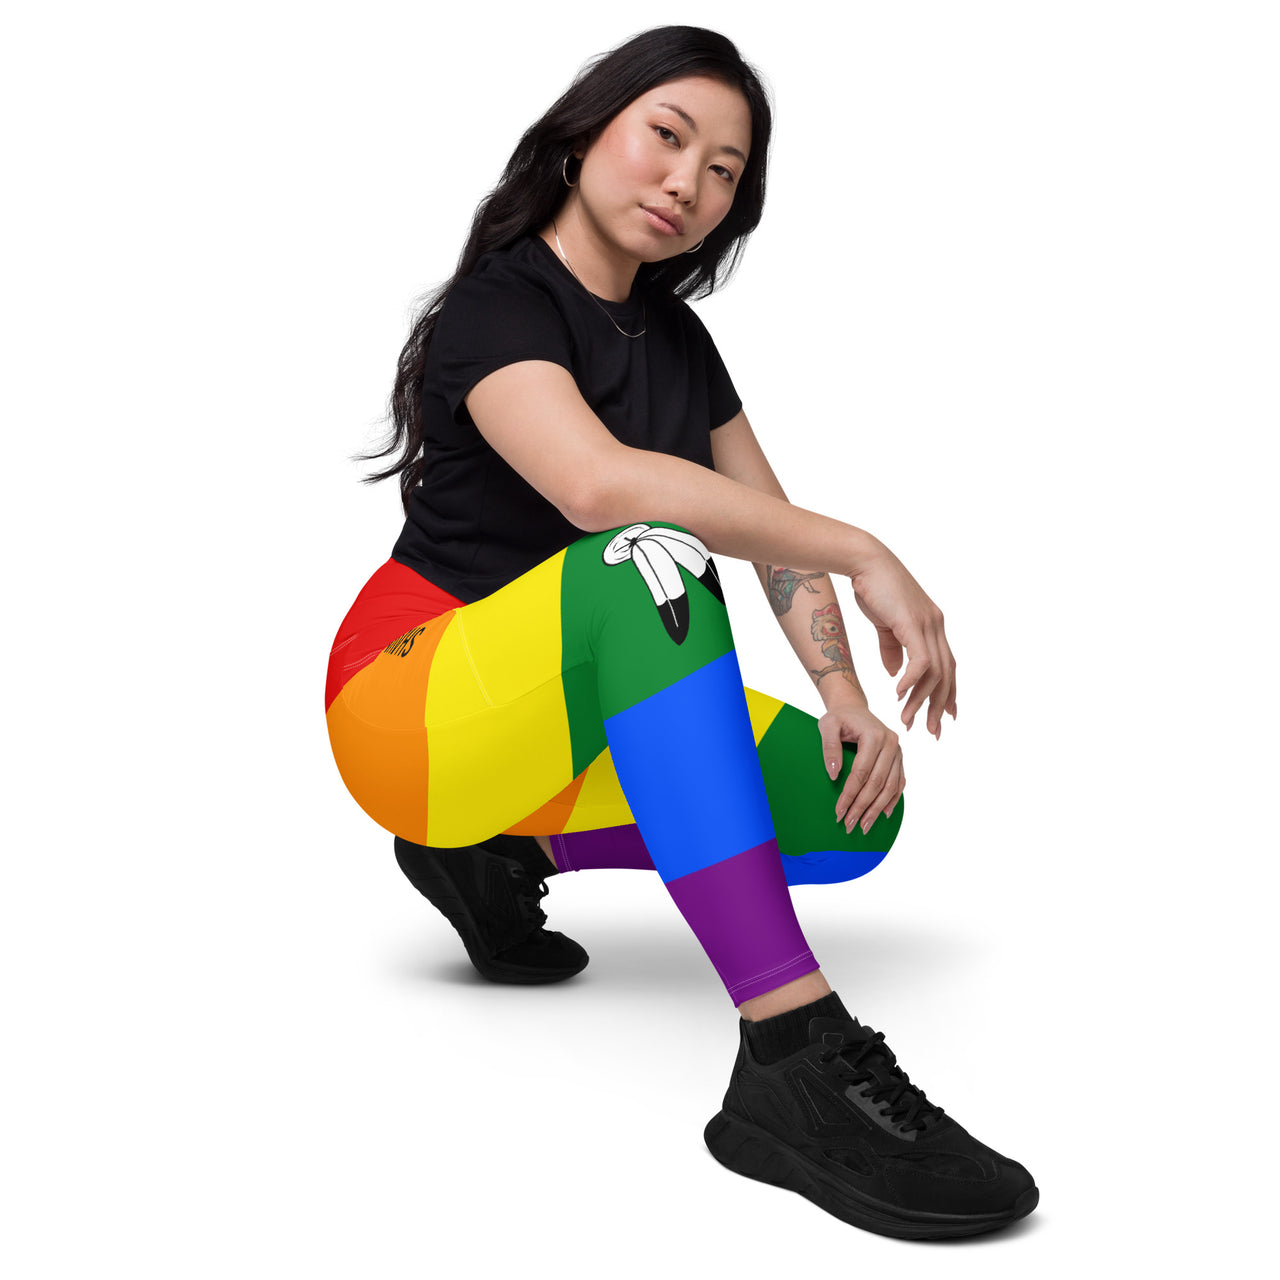 Two Spirit Flag LGBTQ Pockets Leggings Women’s Size SHAVA